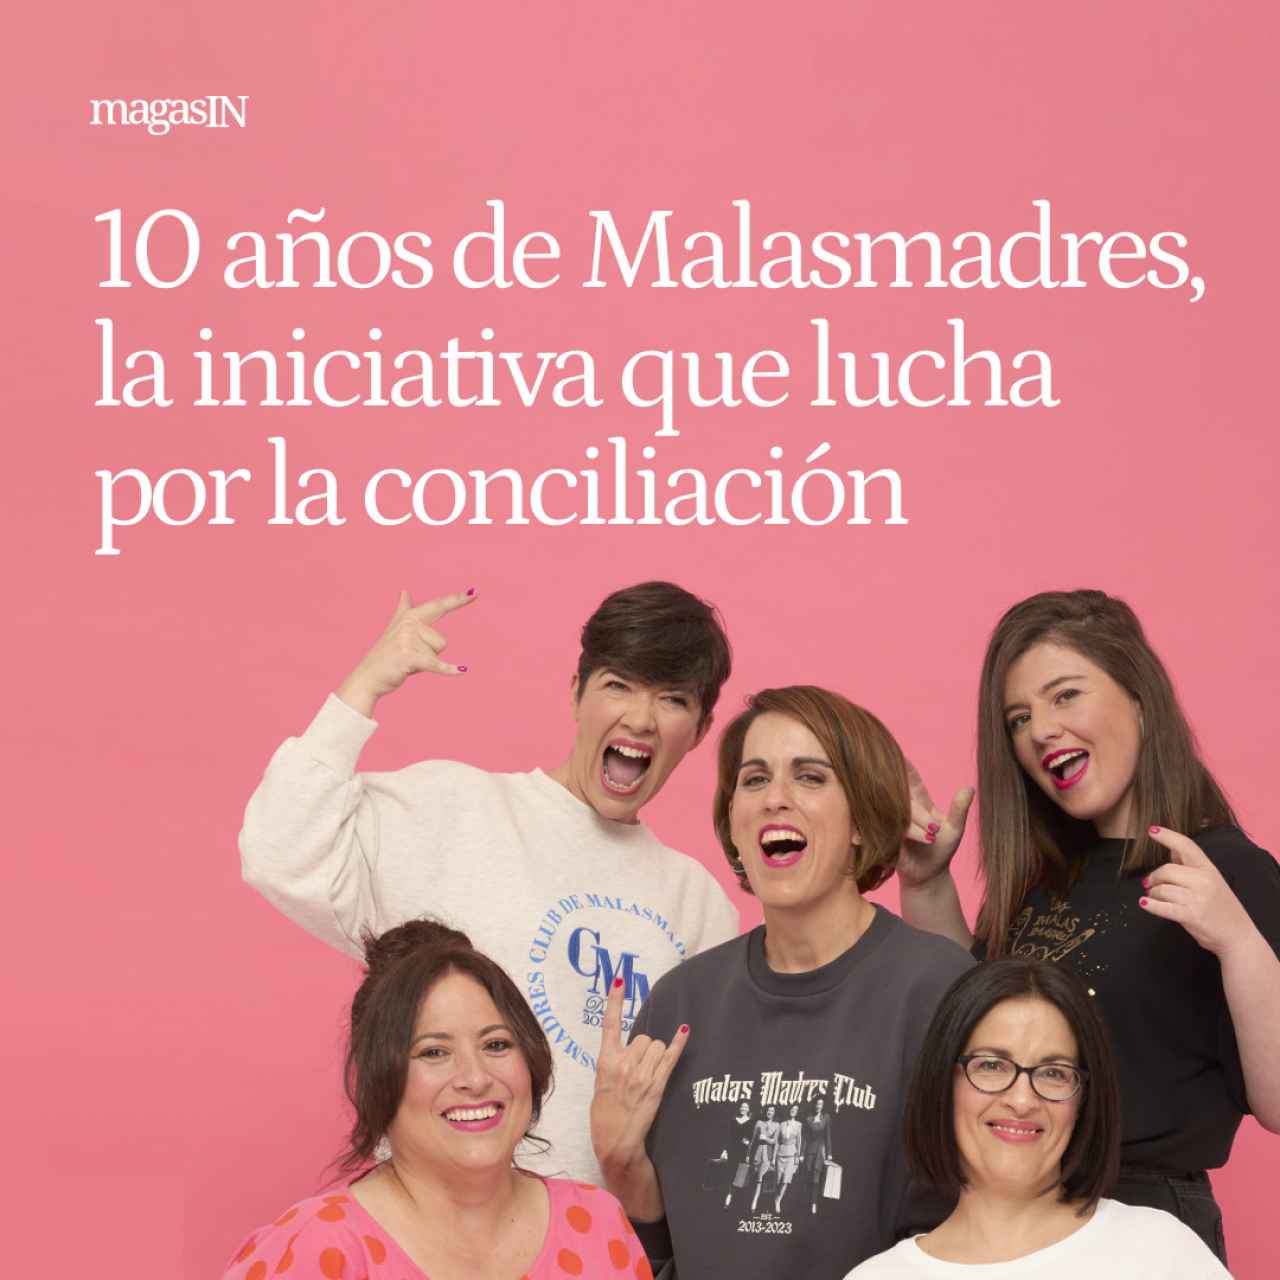 10 años de Malasmadres, la iniciativa que lucha por la conciliación entre maternidad y vida laboral